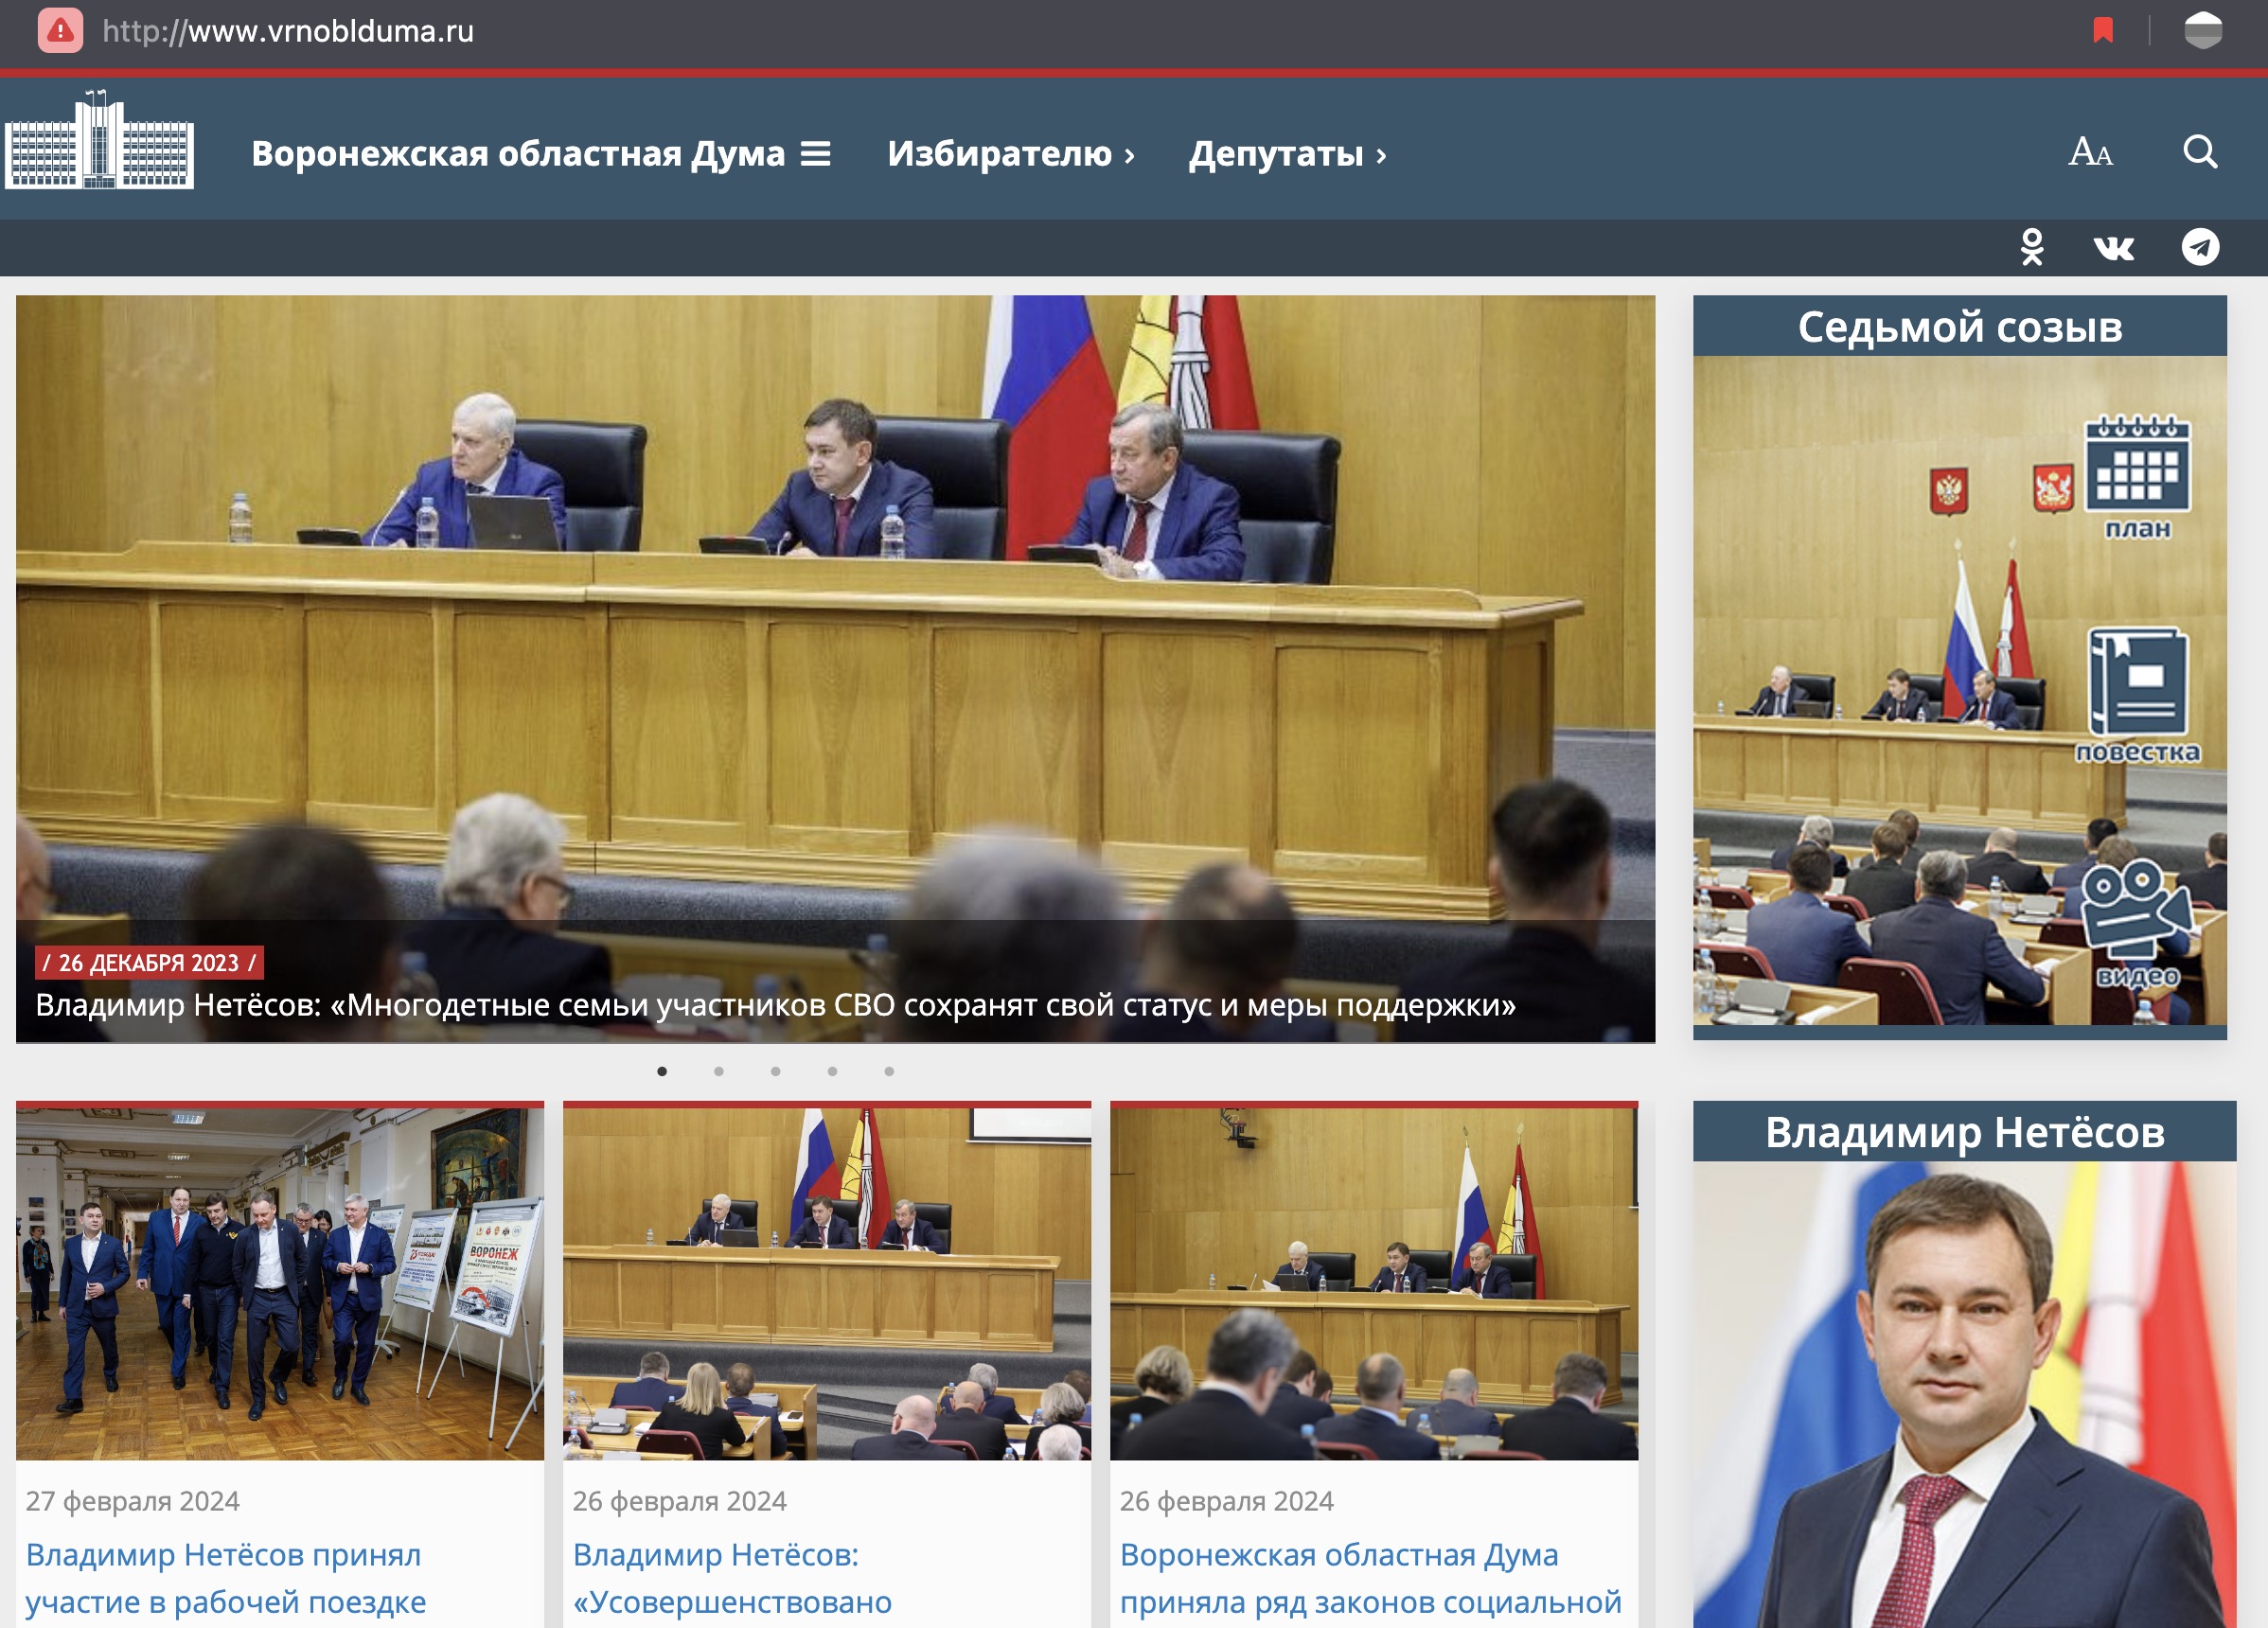 В Воронежской облДуме, судя по сайту, за 2 месяца не произошло важных событий